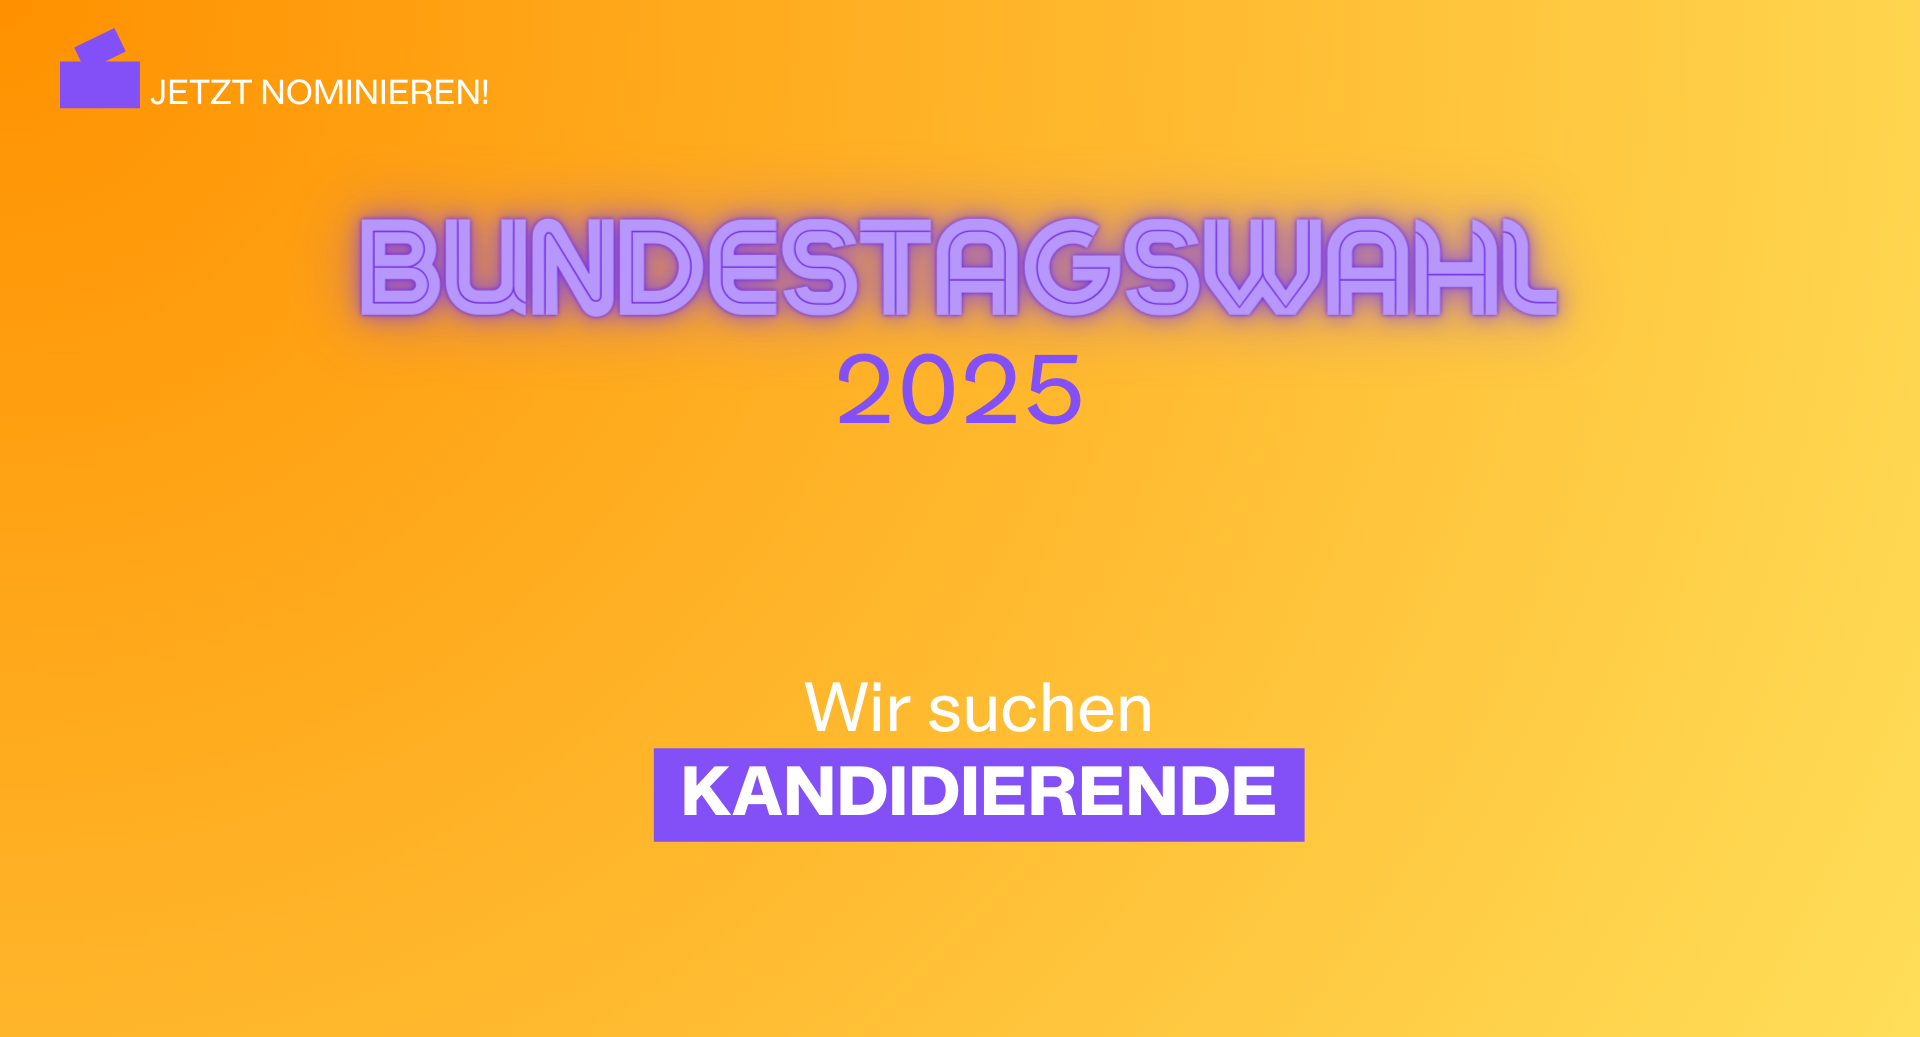 Wir suchen Kandidierende für die Bundestagswahl 2025